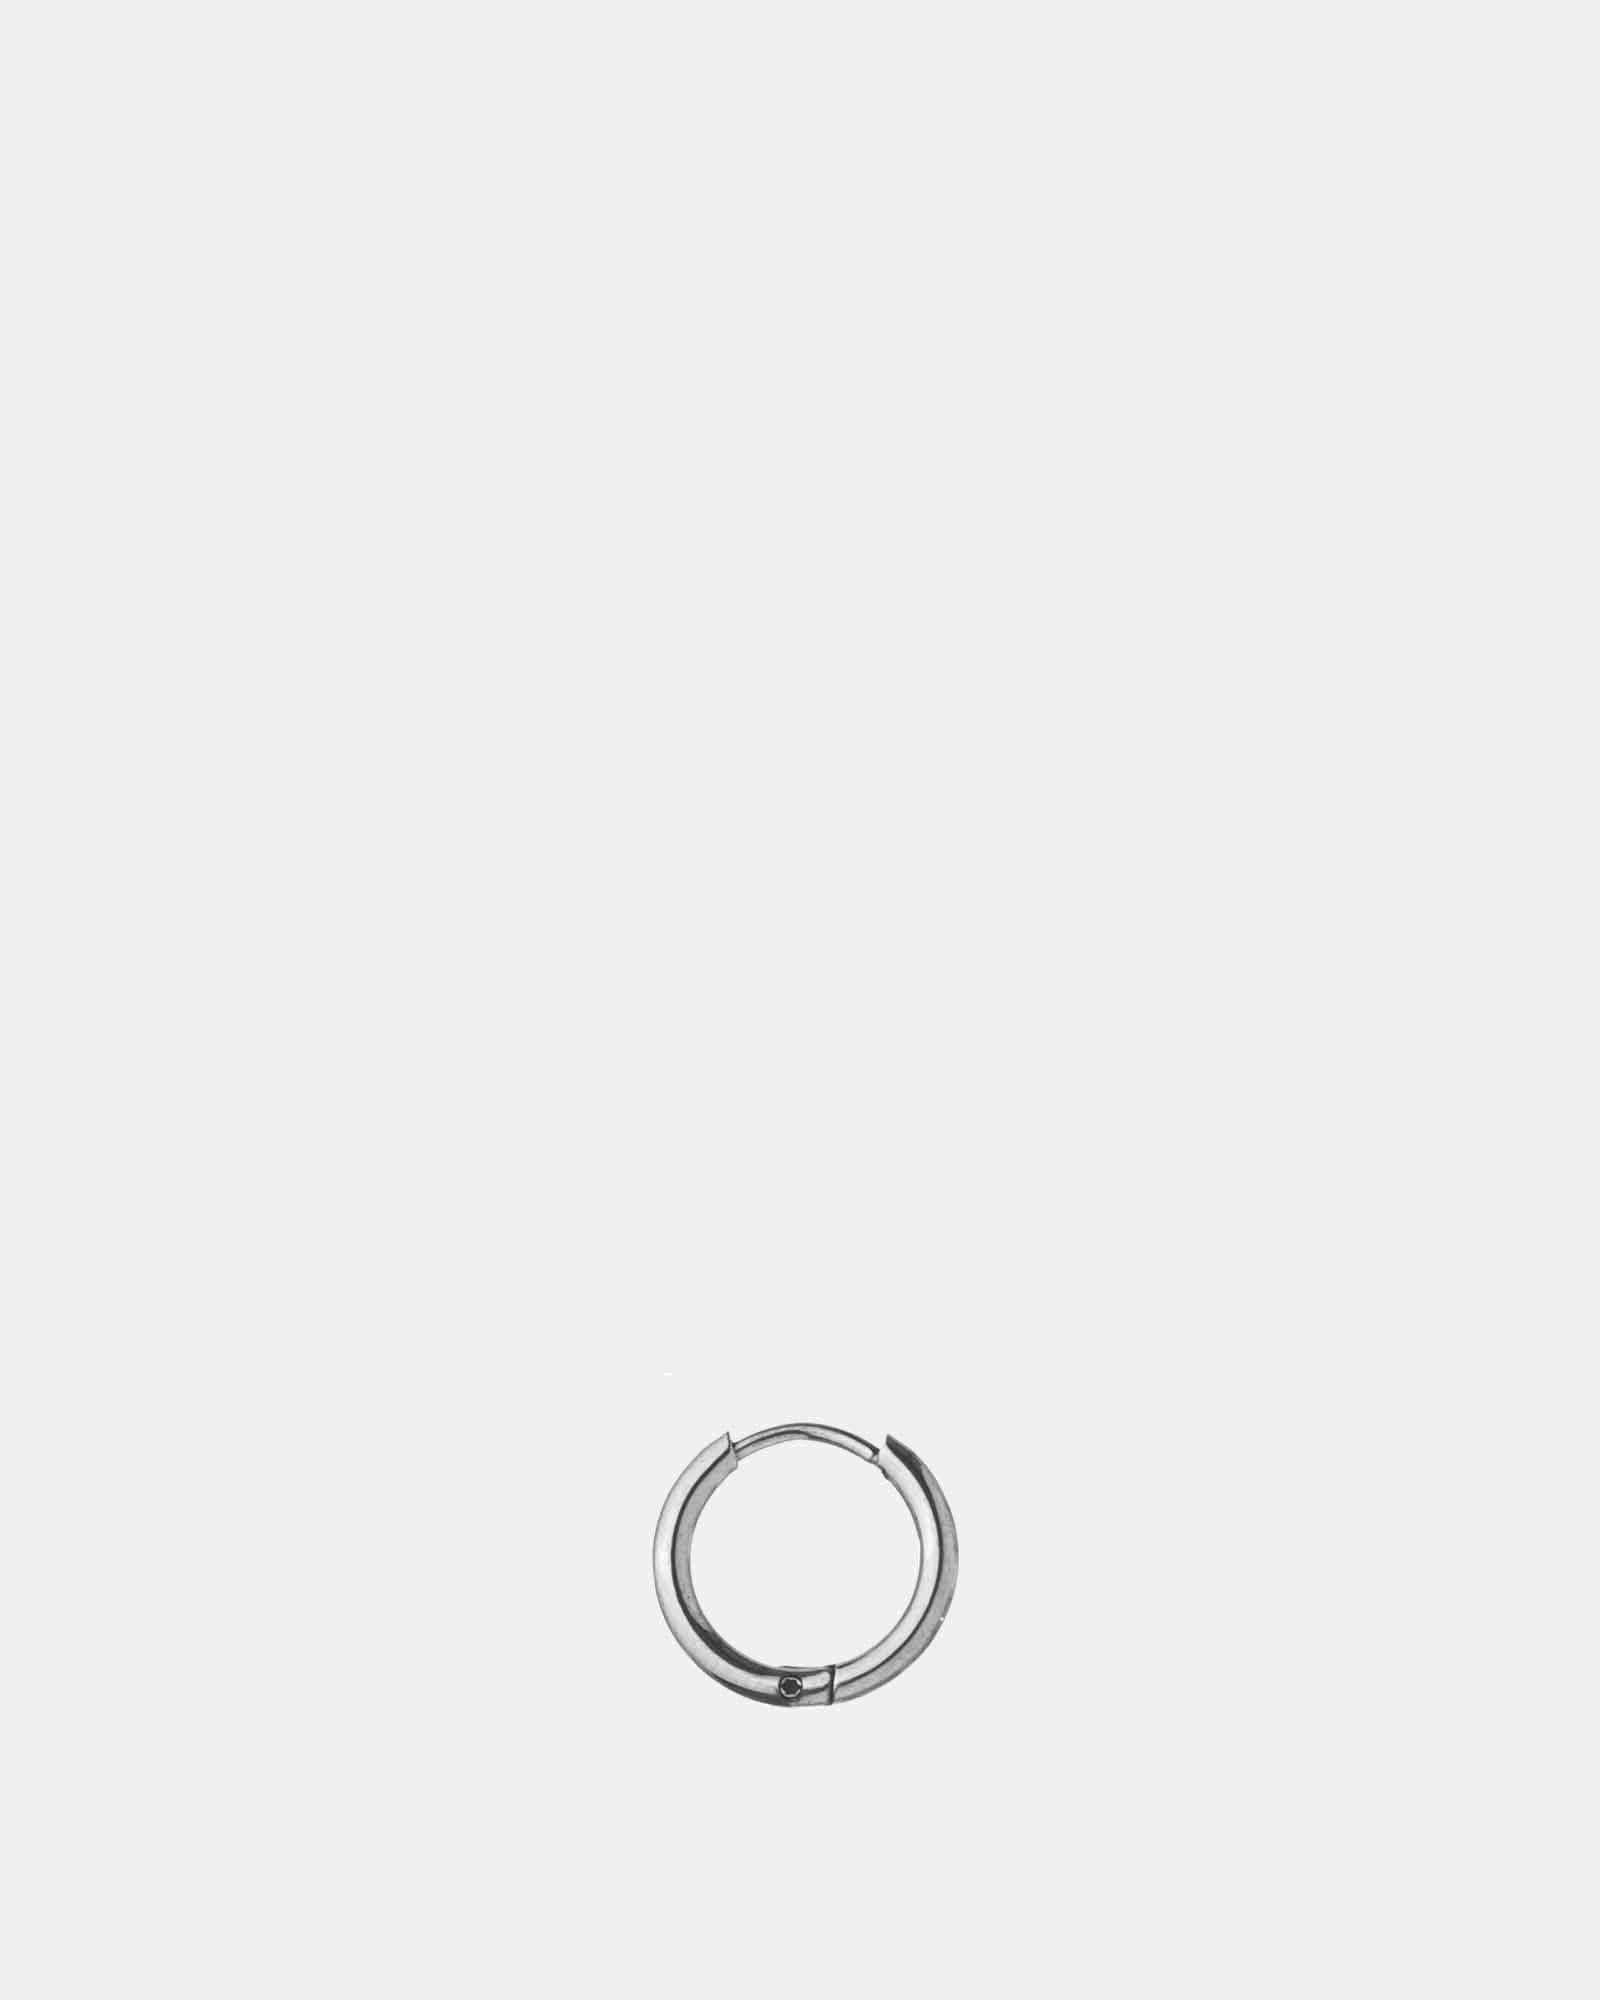 Stainless Steel Earring 10mm - Hoop Earring - Online Unissex Jewelry - Dicci